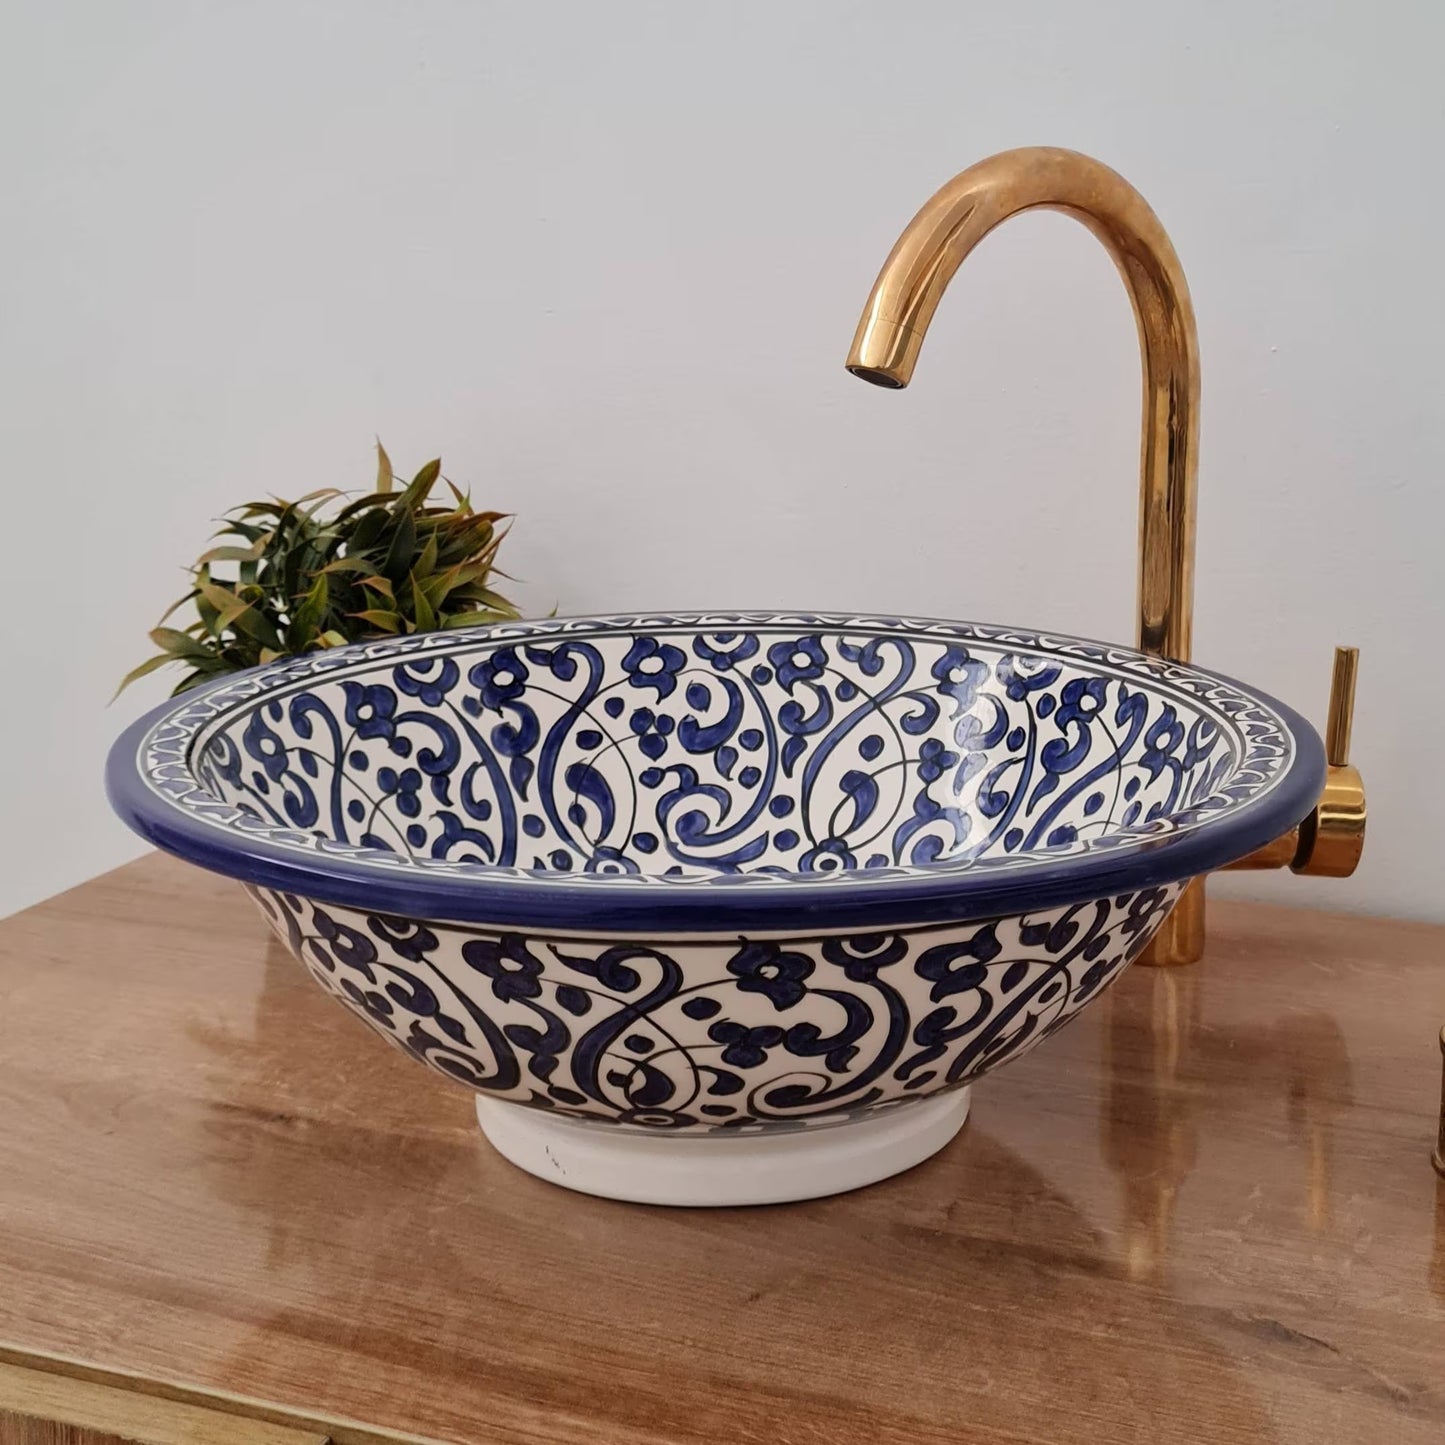 Moroccan sink | moroccan ceramic sink | bathroom sink | moroccan bathroom basin | cloakroom basin | Bleu sink #169